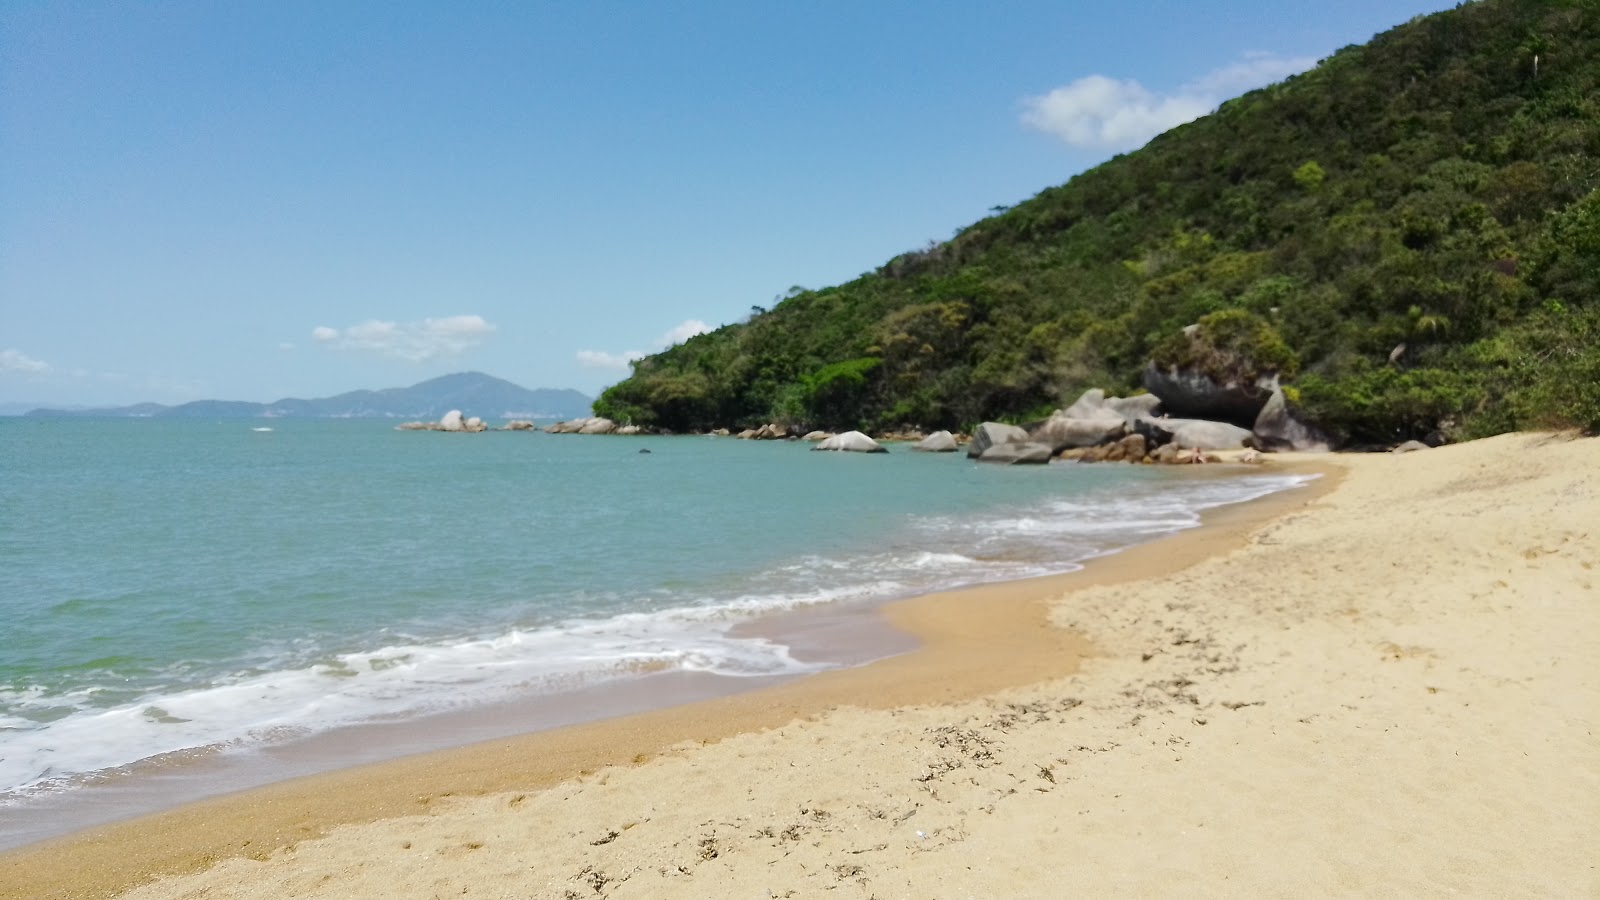 Foto af Praia da Lagoa - populært sted blandt afslapningskendere